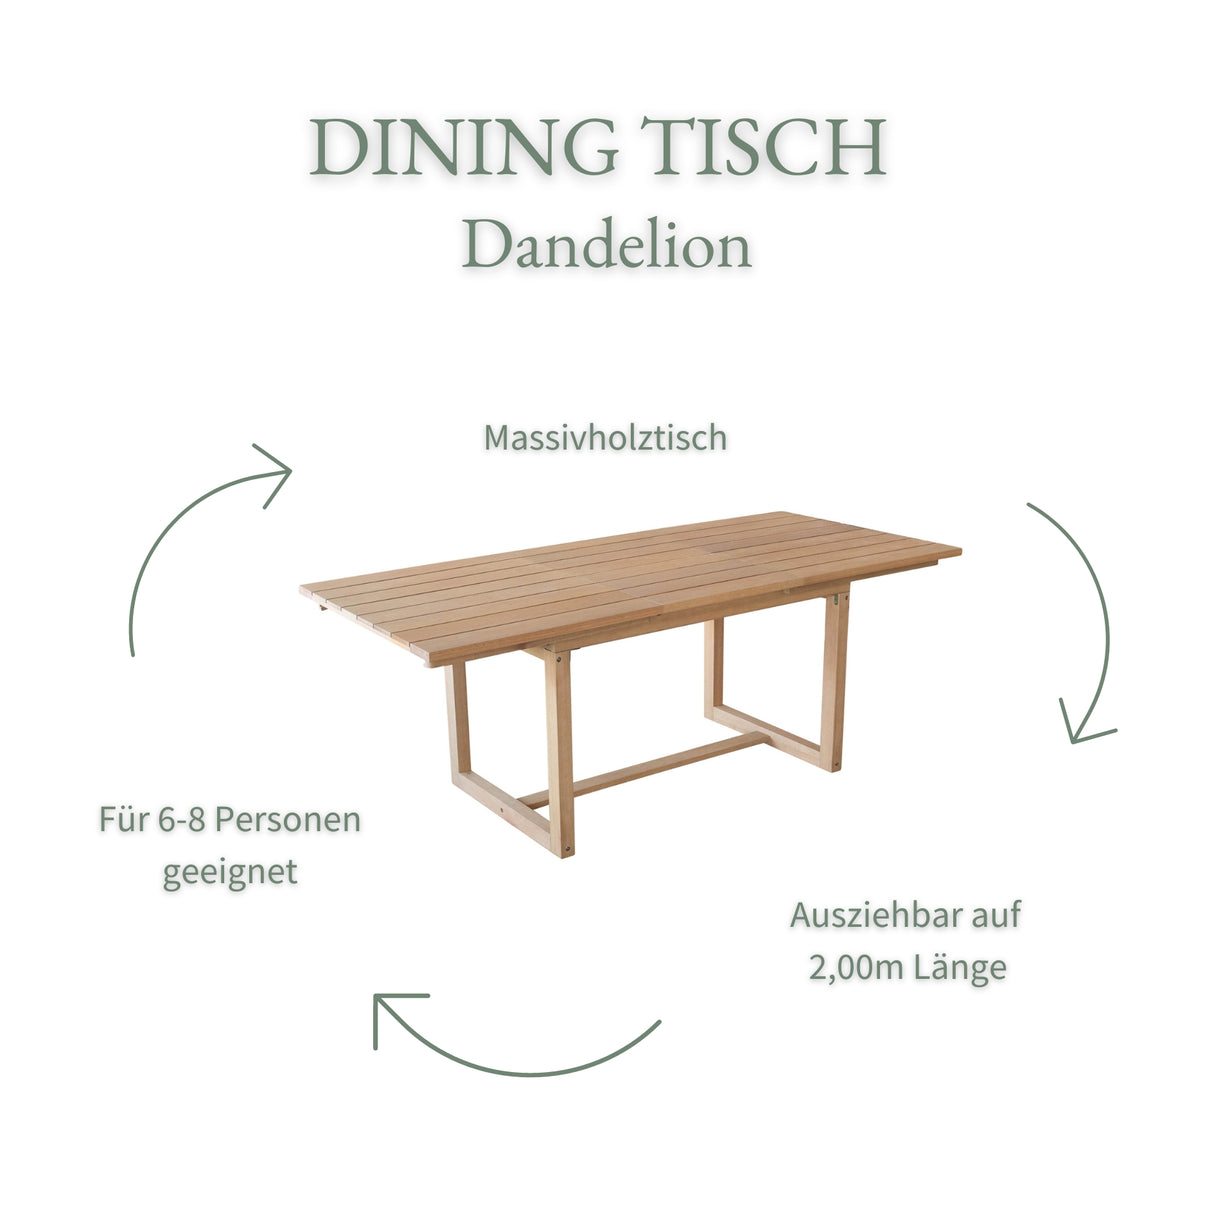 Dining Tisch Dandelion